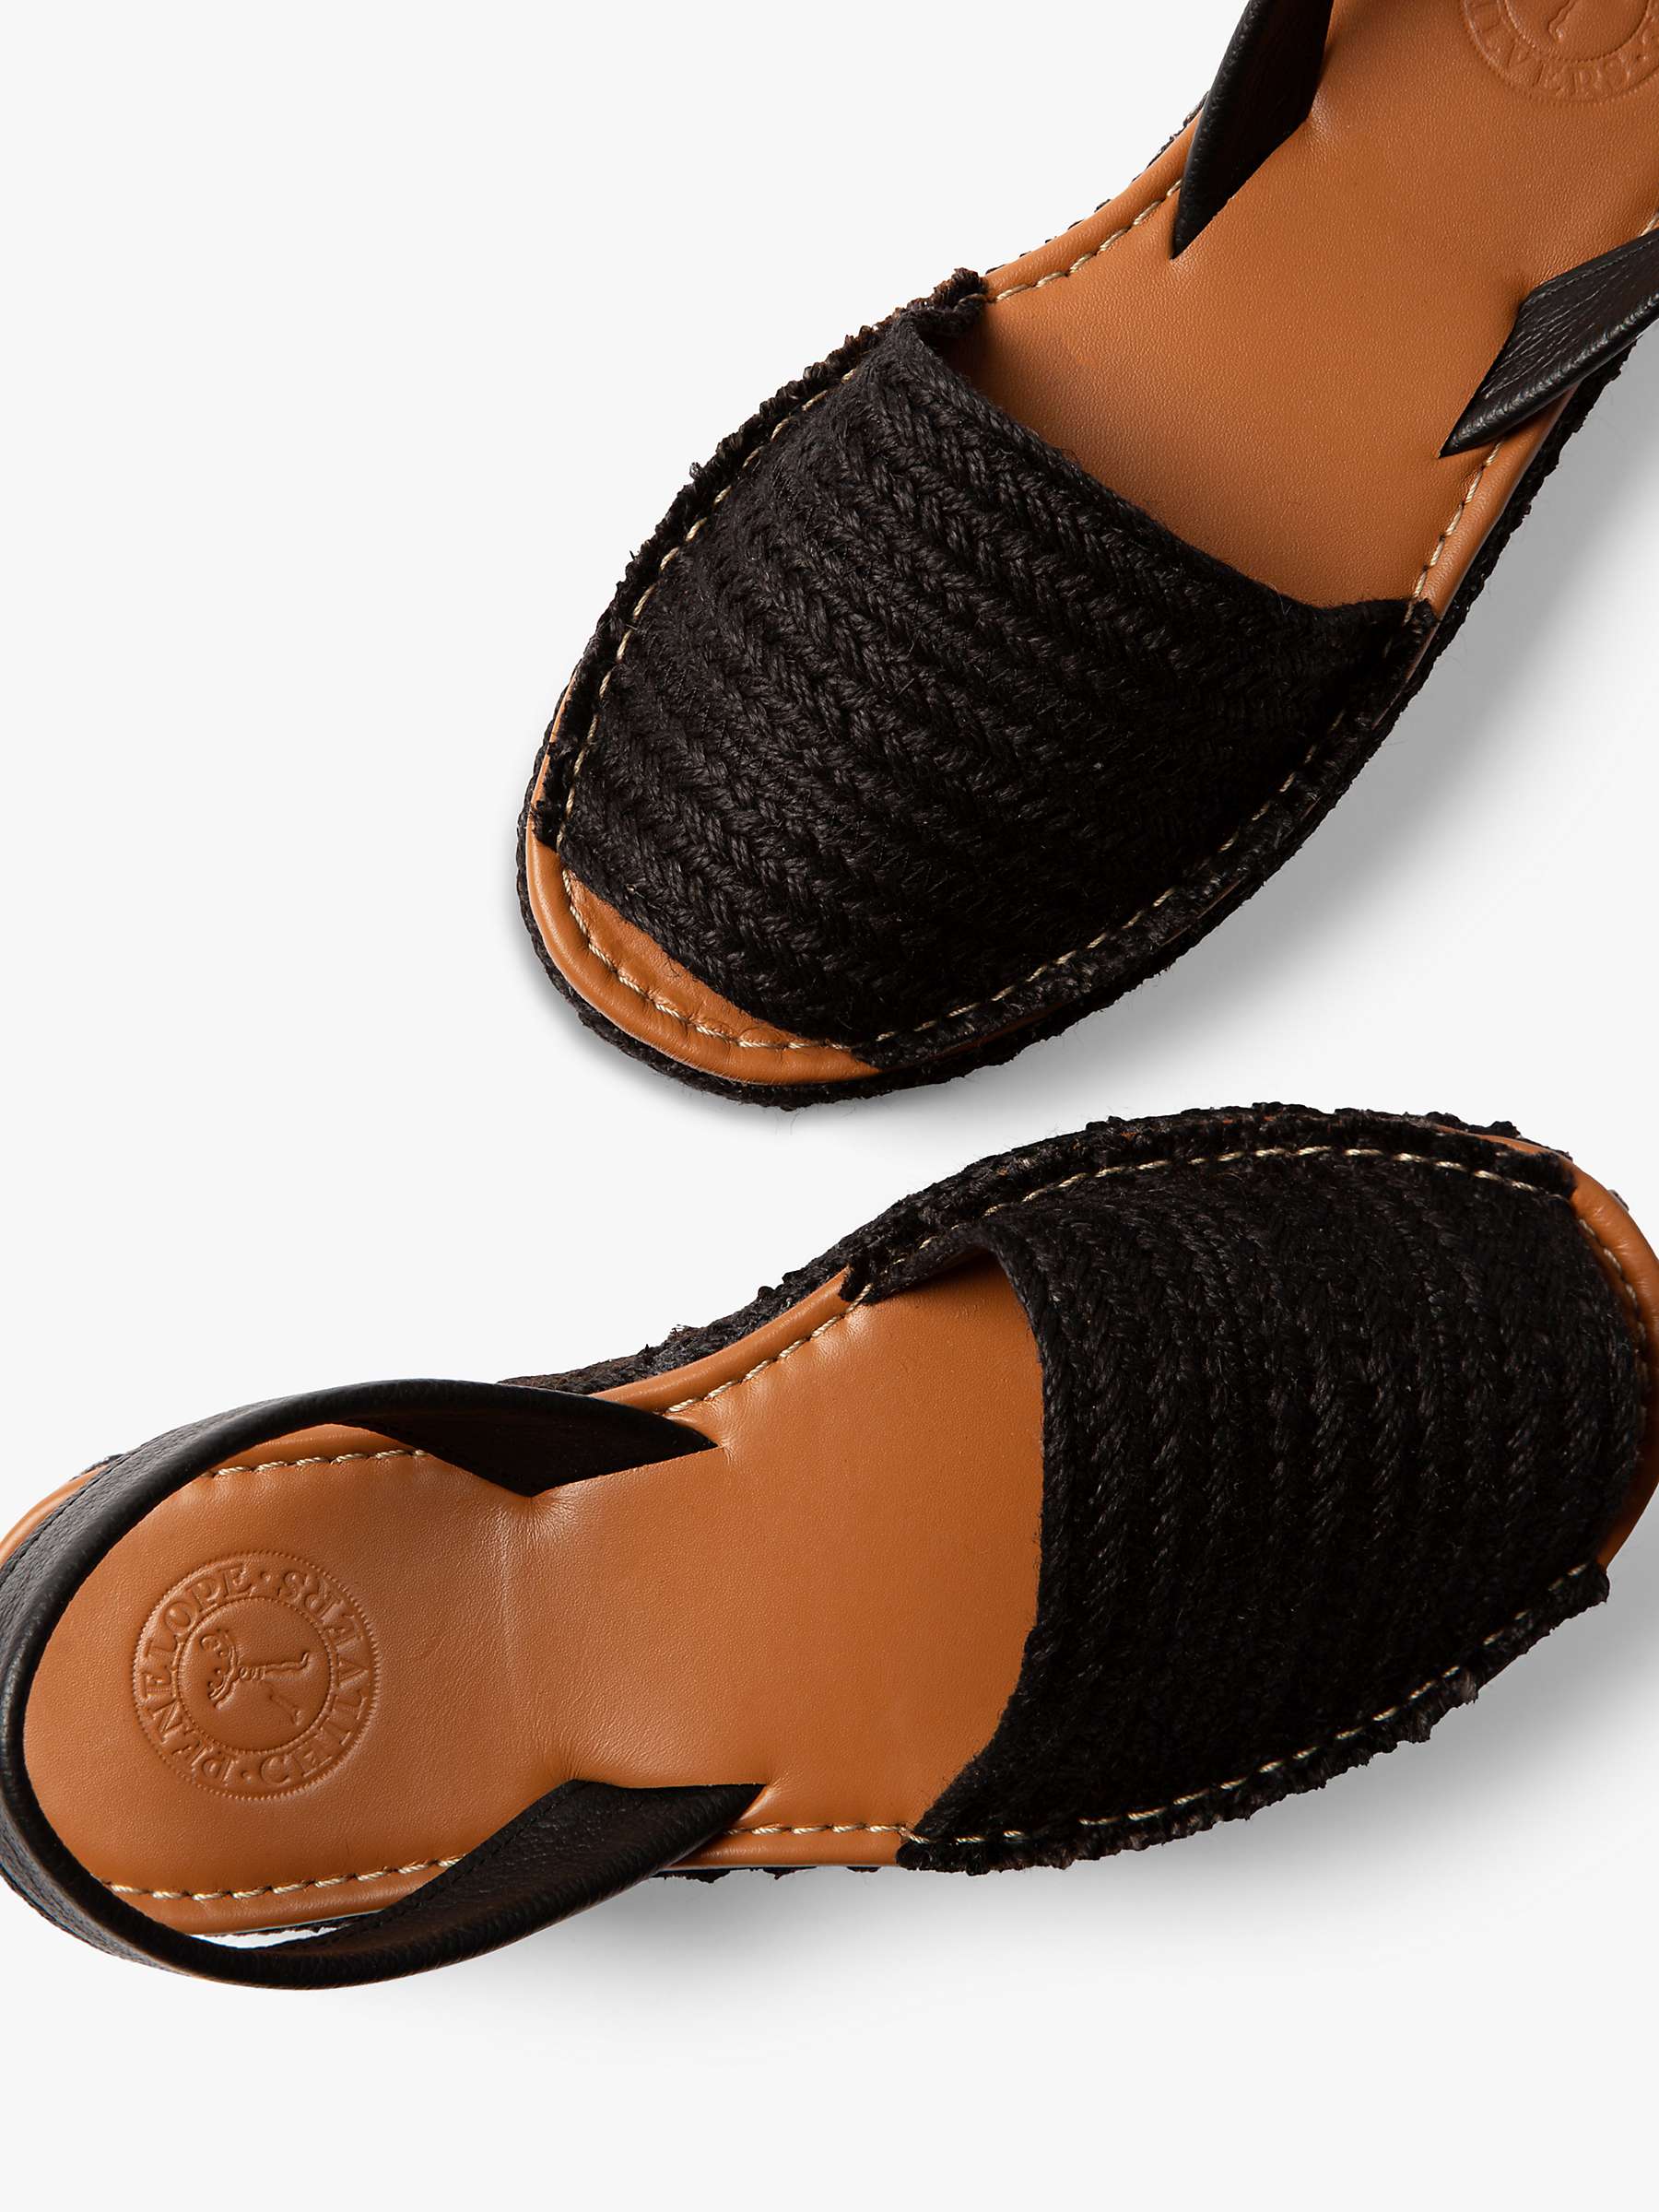 Buy Penelope Chilvers Plaited Jute Flatform Sandals, Black Online at johnlewis.com